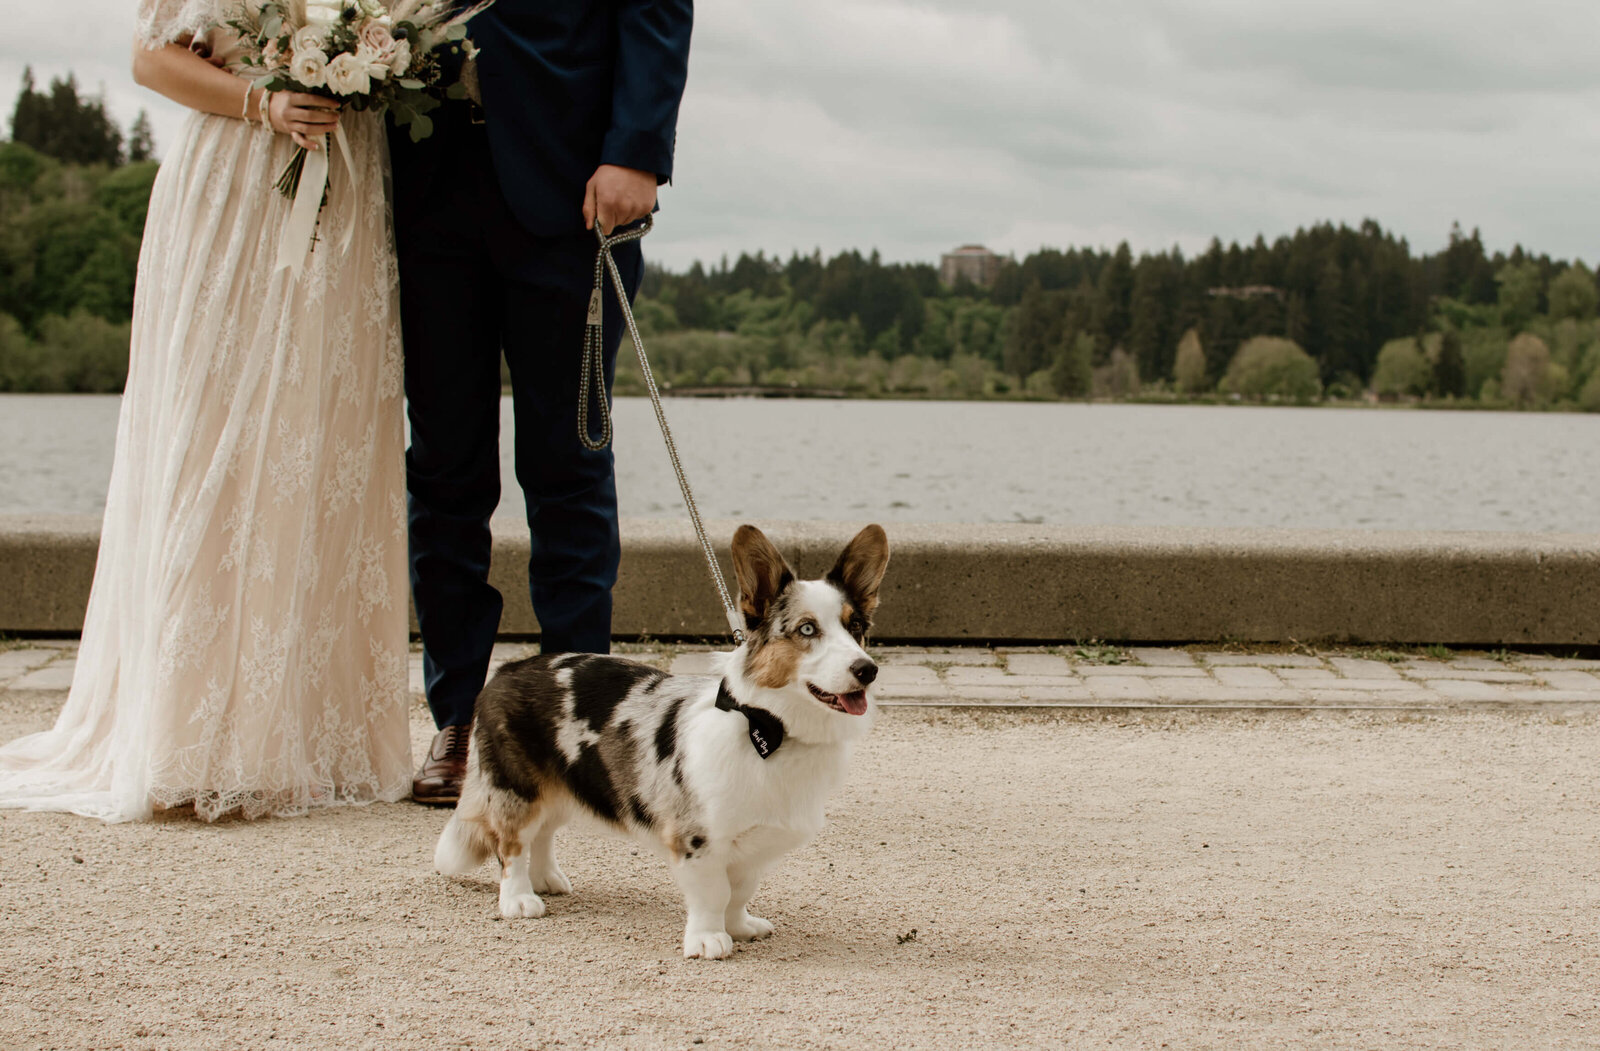 Best Dog at wedding.